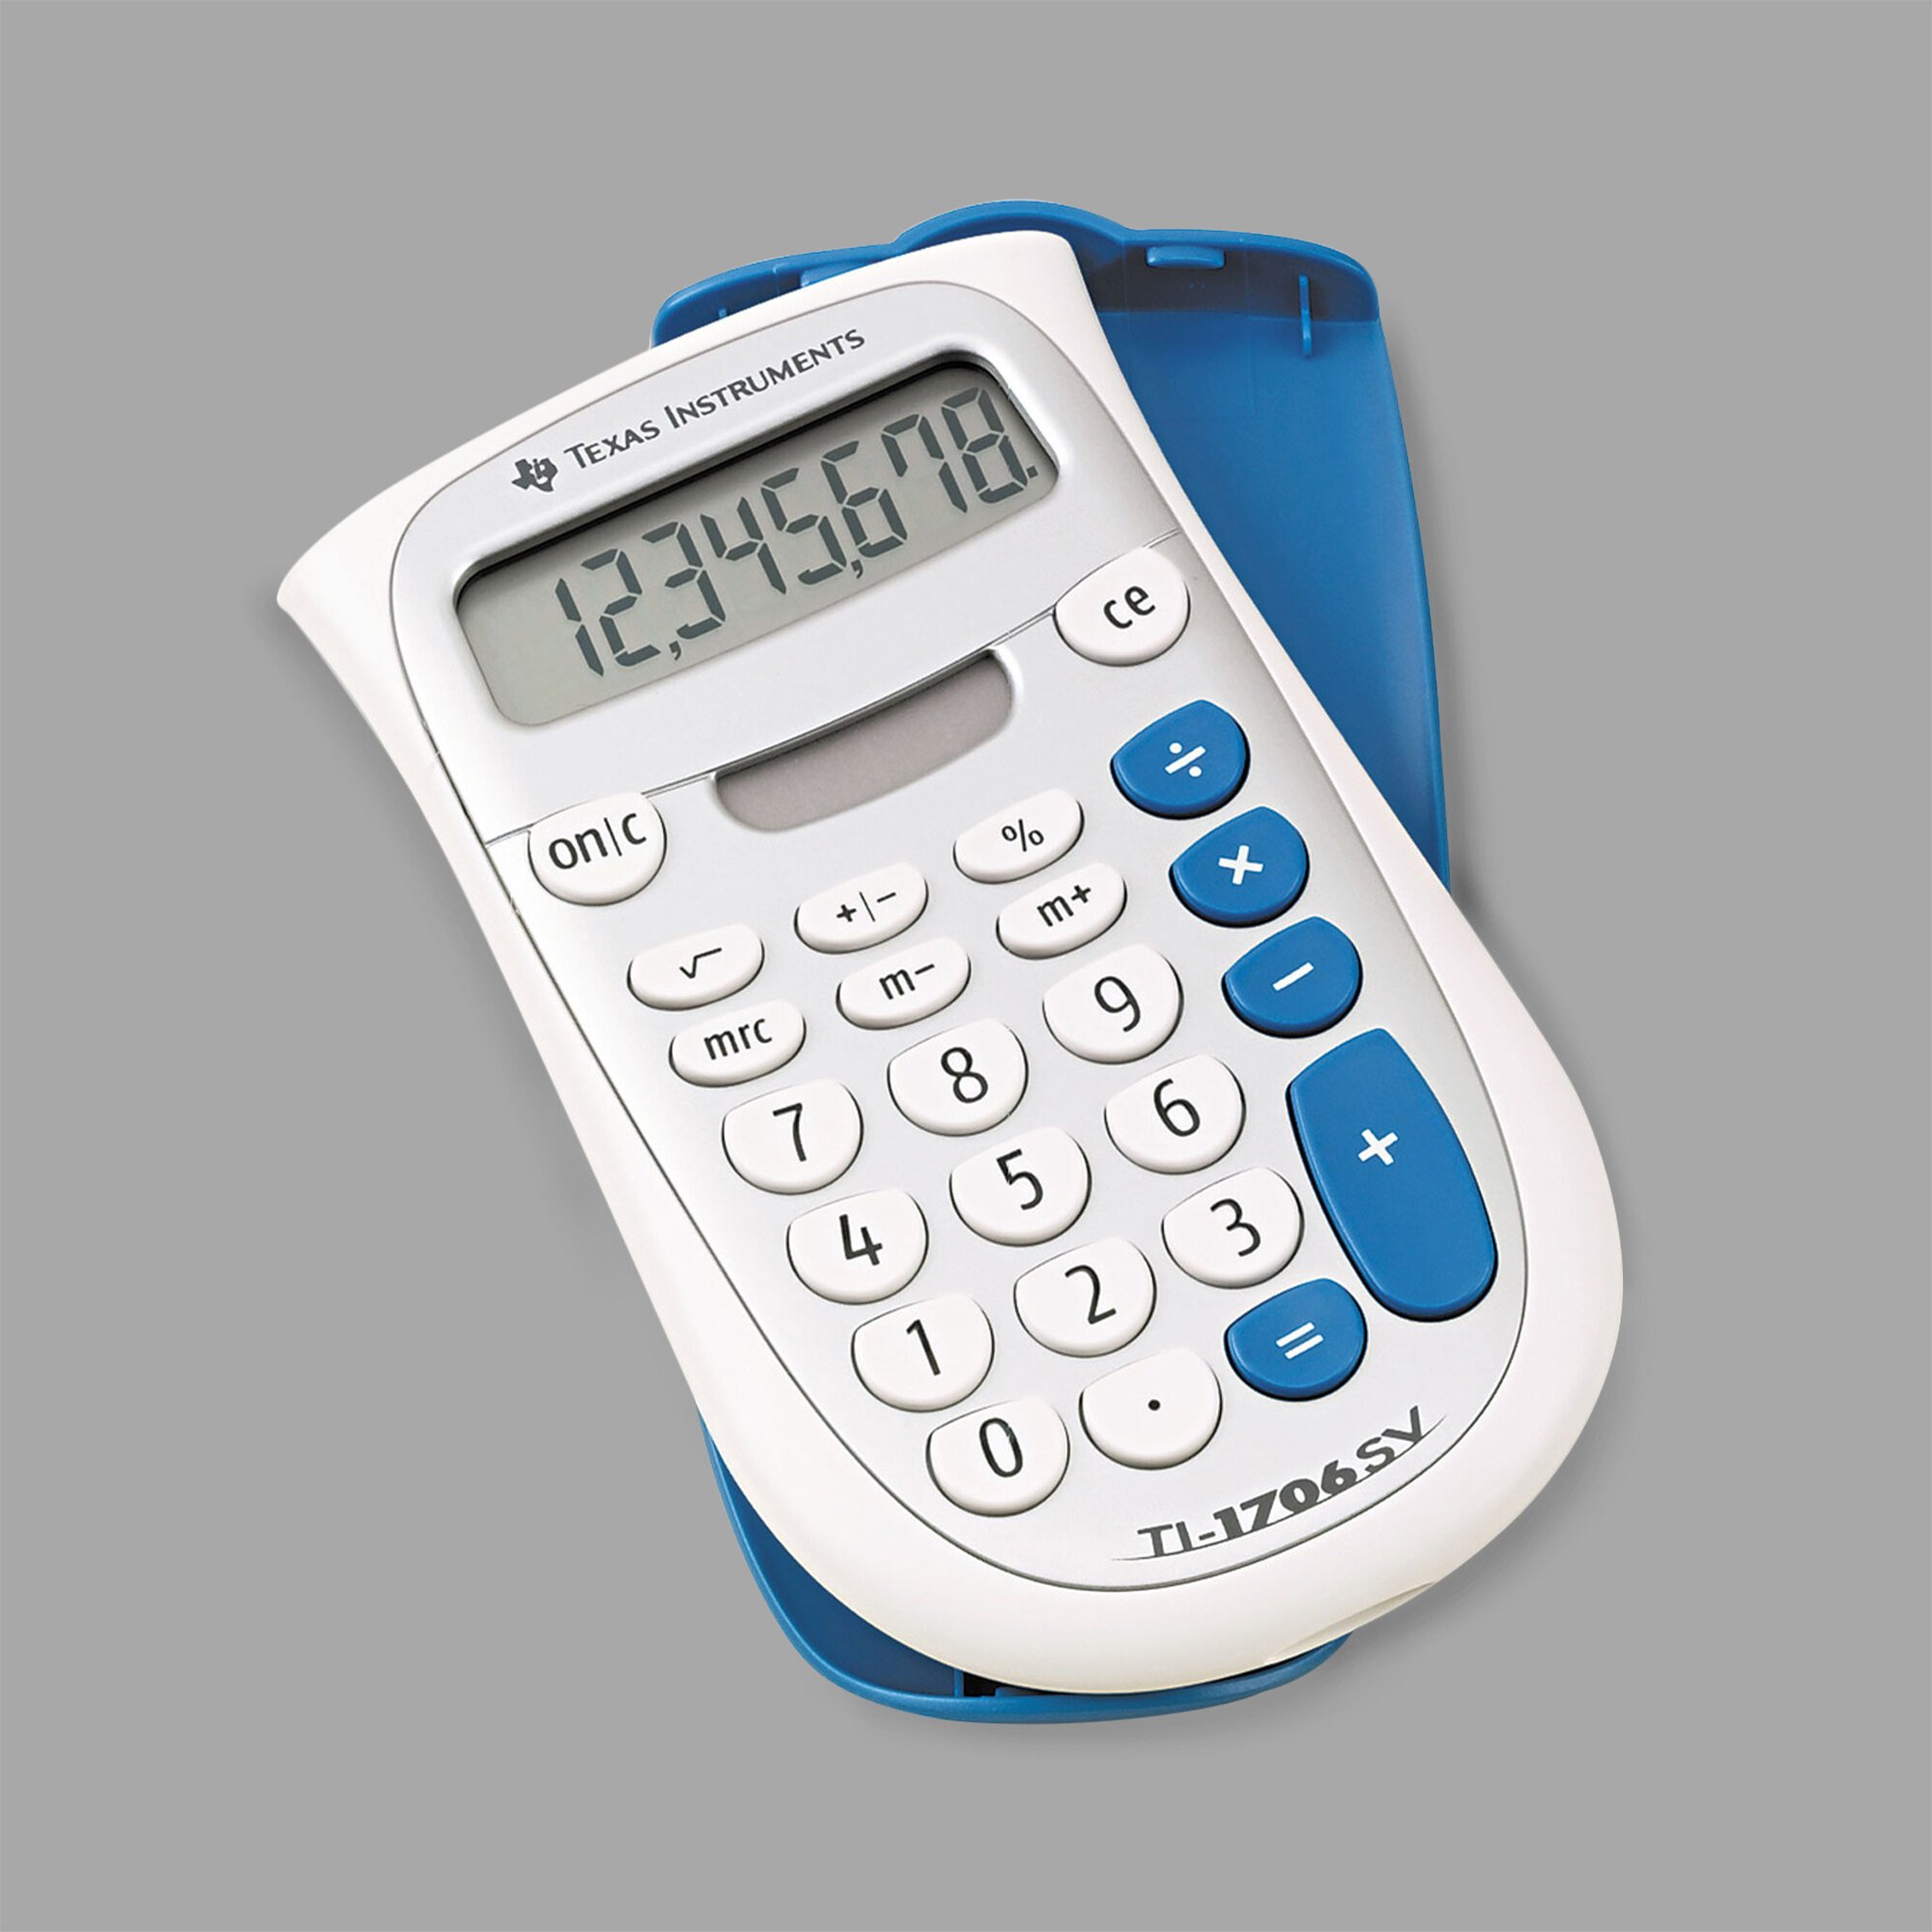 texas instruments online calculator